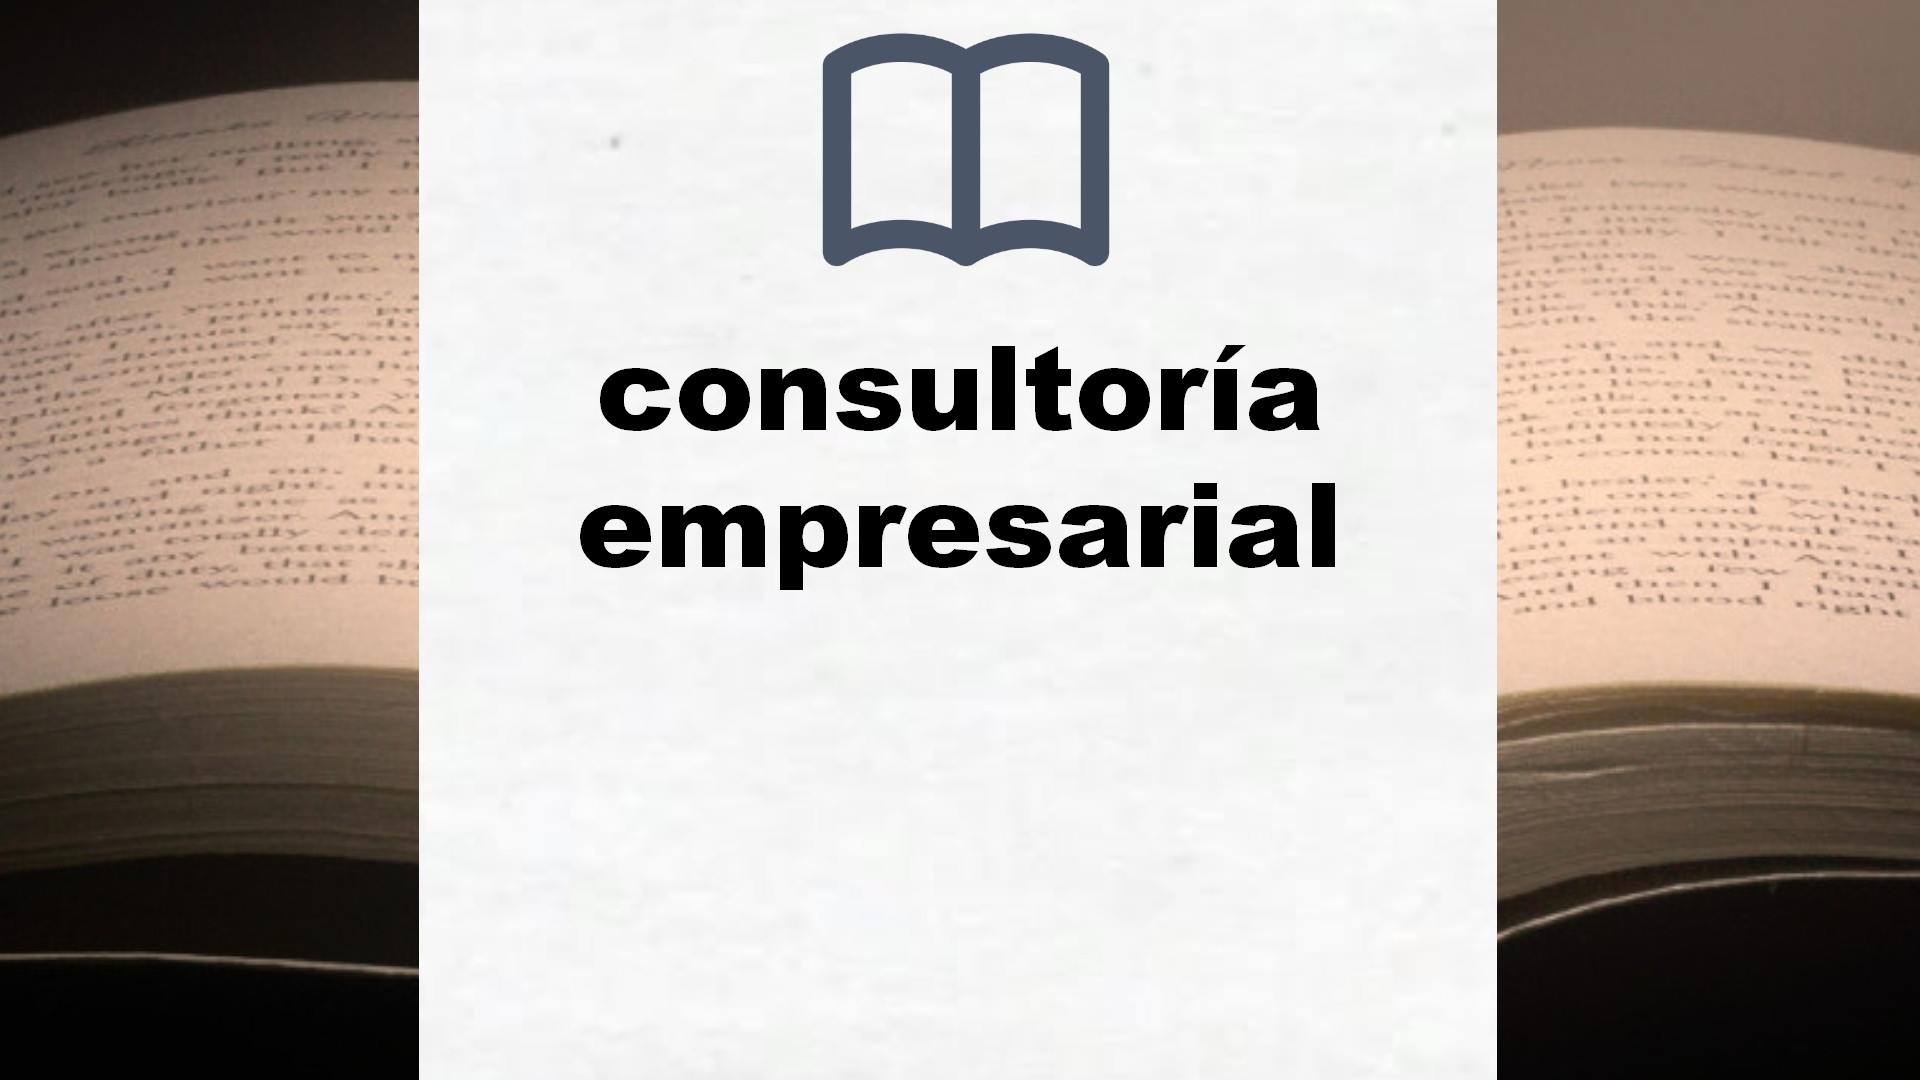 Libros sobre consultoría empresarial